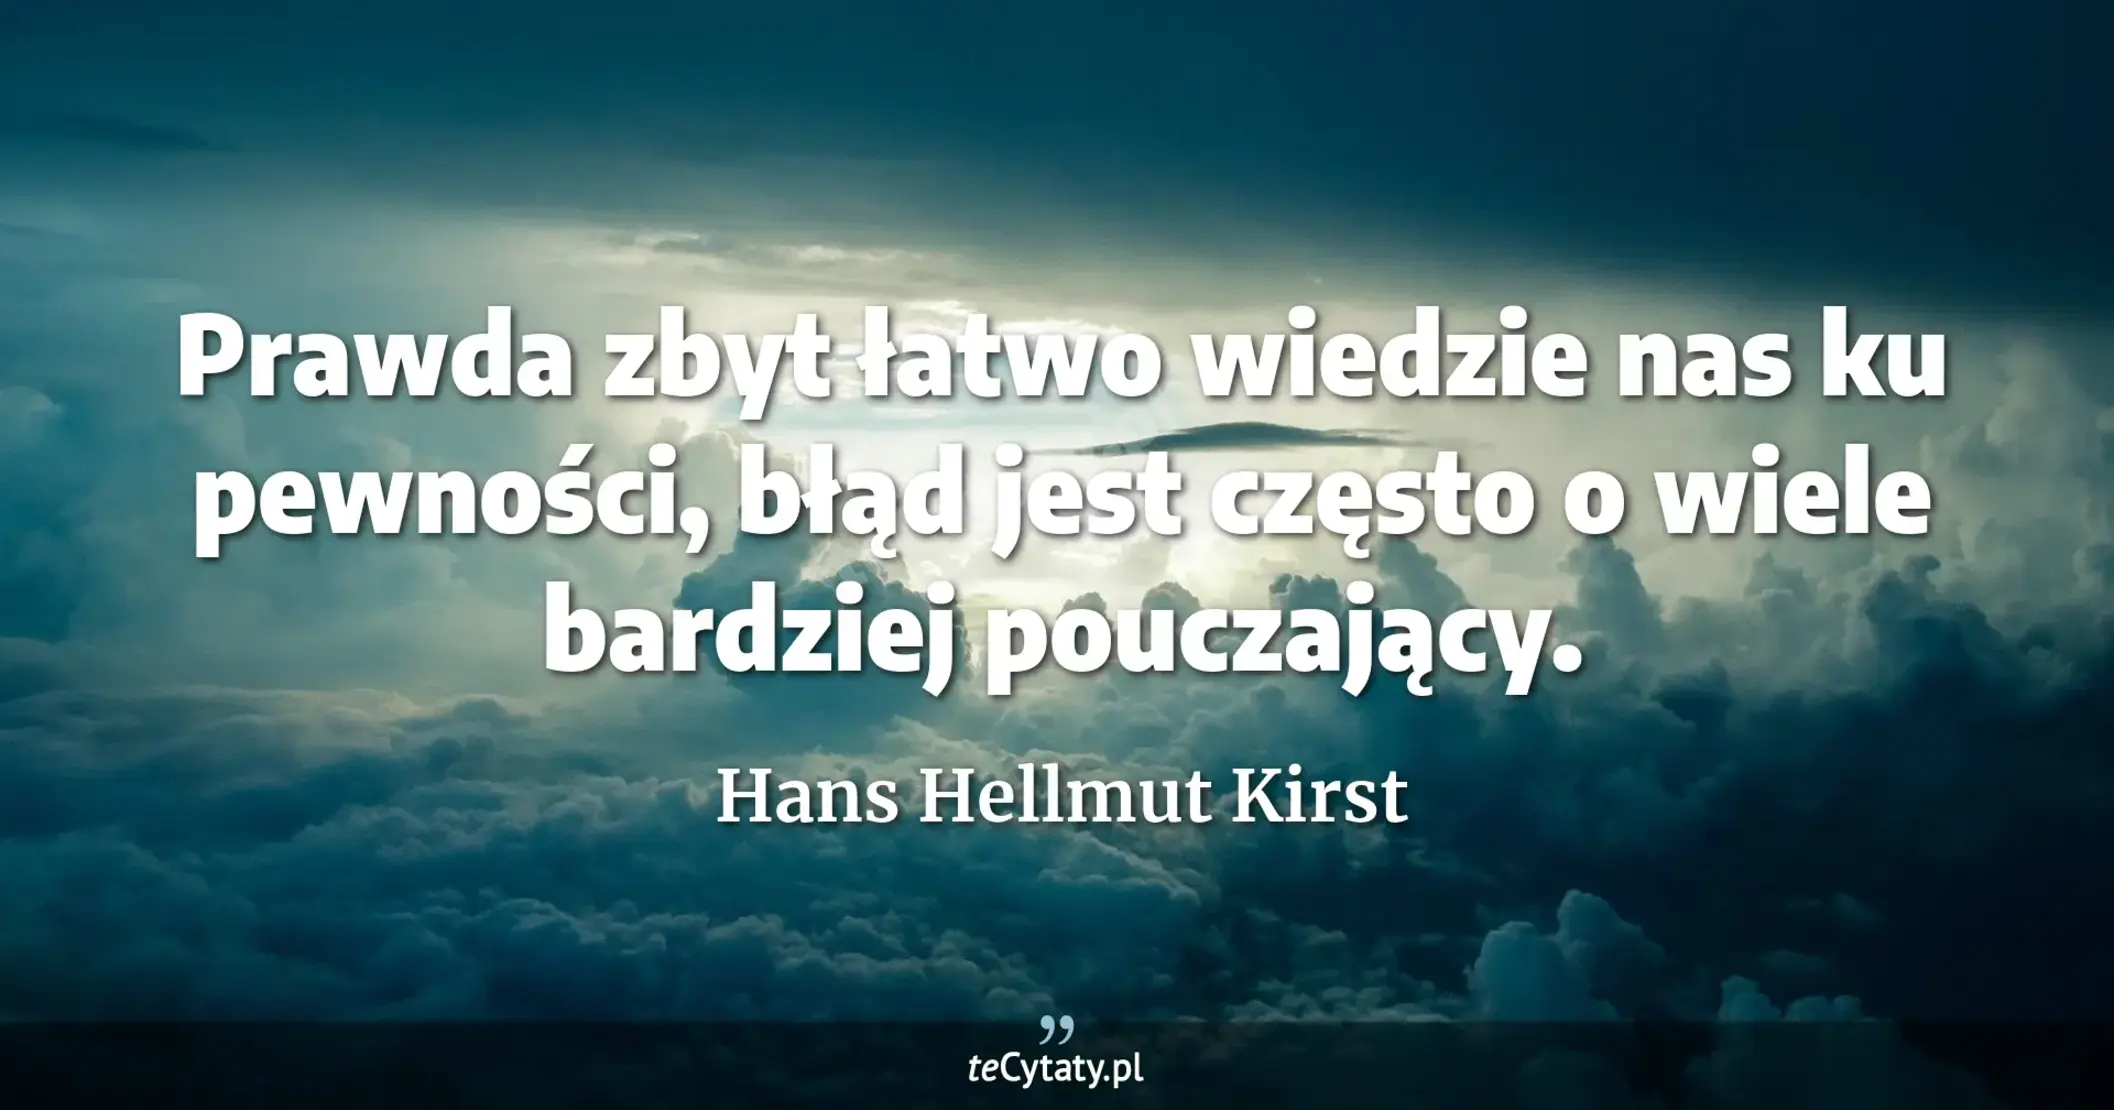 Prawda zbyt łatwo wiedzie nas ku pewności, błąd jest często o wiele bardziej pouczający. - Hans Hellmut Kirst